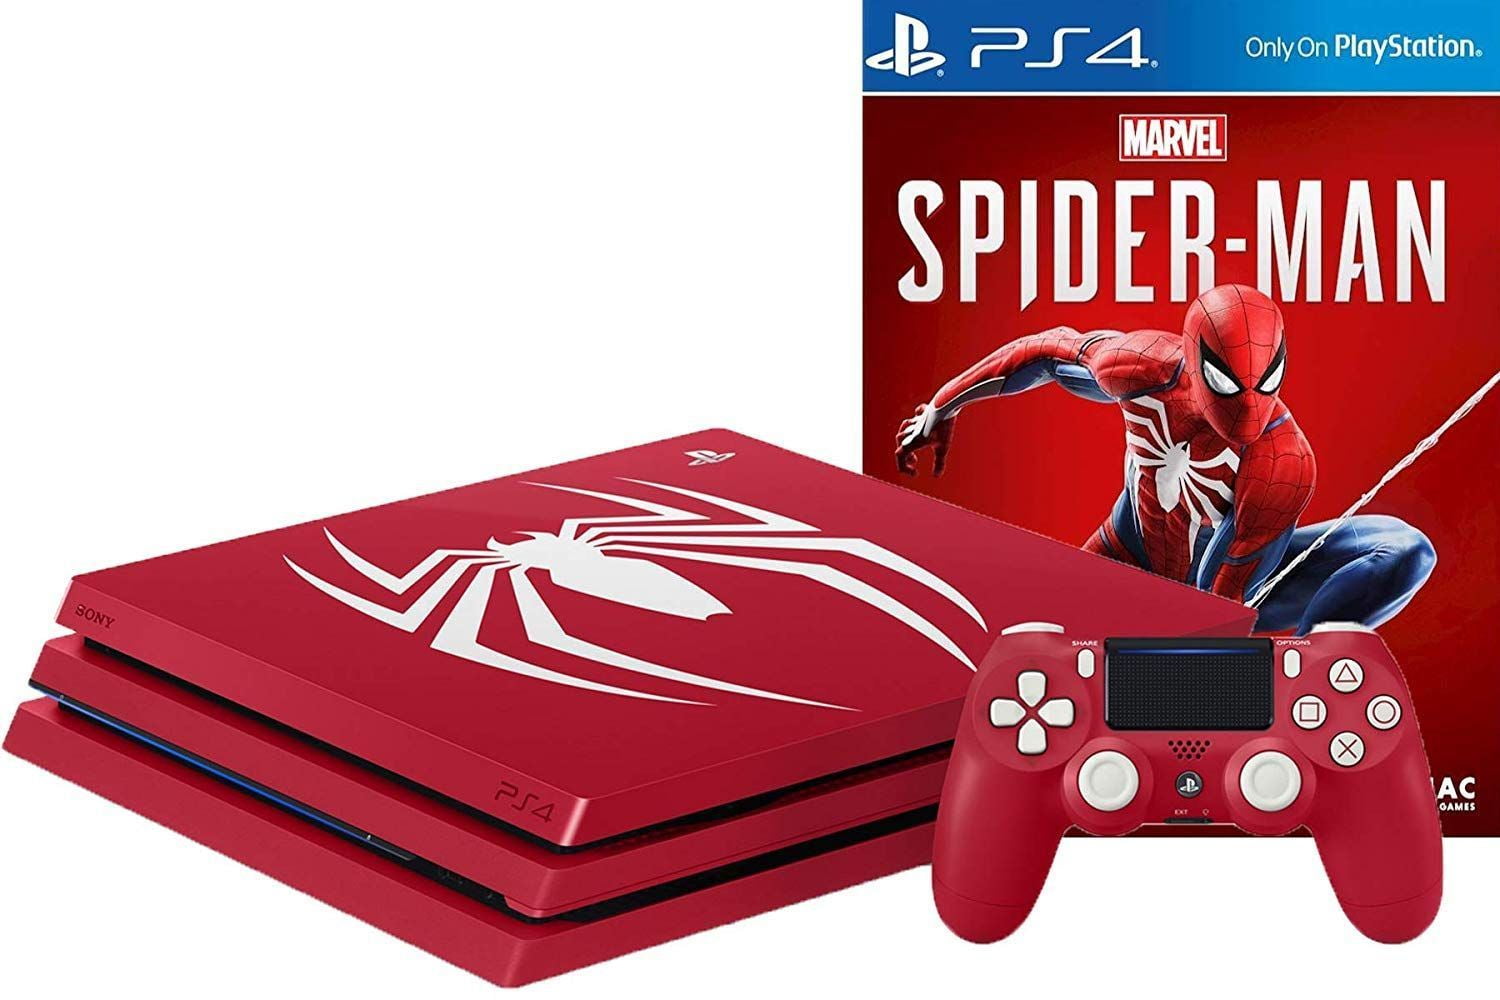 Паук на плейстейшен 4. PLAYSTATION 4 Limited Edition человек паук. Sony PLAYSTATION 4 Pro Limited Edition Spider man. Dualshock 4 Spider man Edition. Игровая консоль PLAYSTATION 4 Pro 1tb + Spider-man Limited Edition.